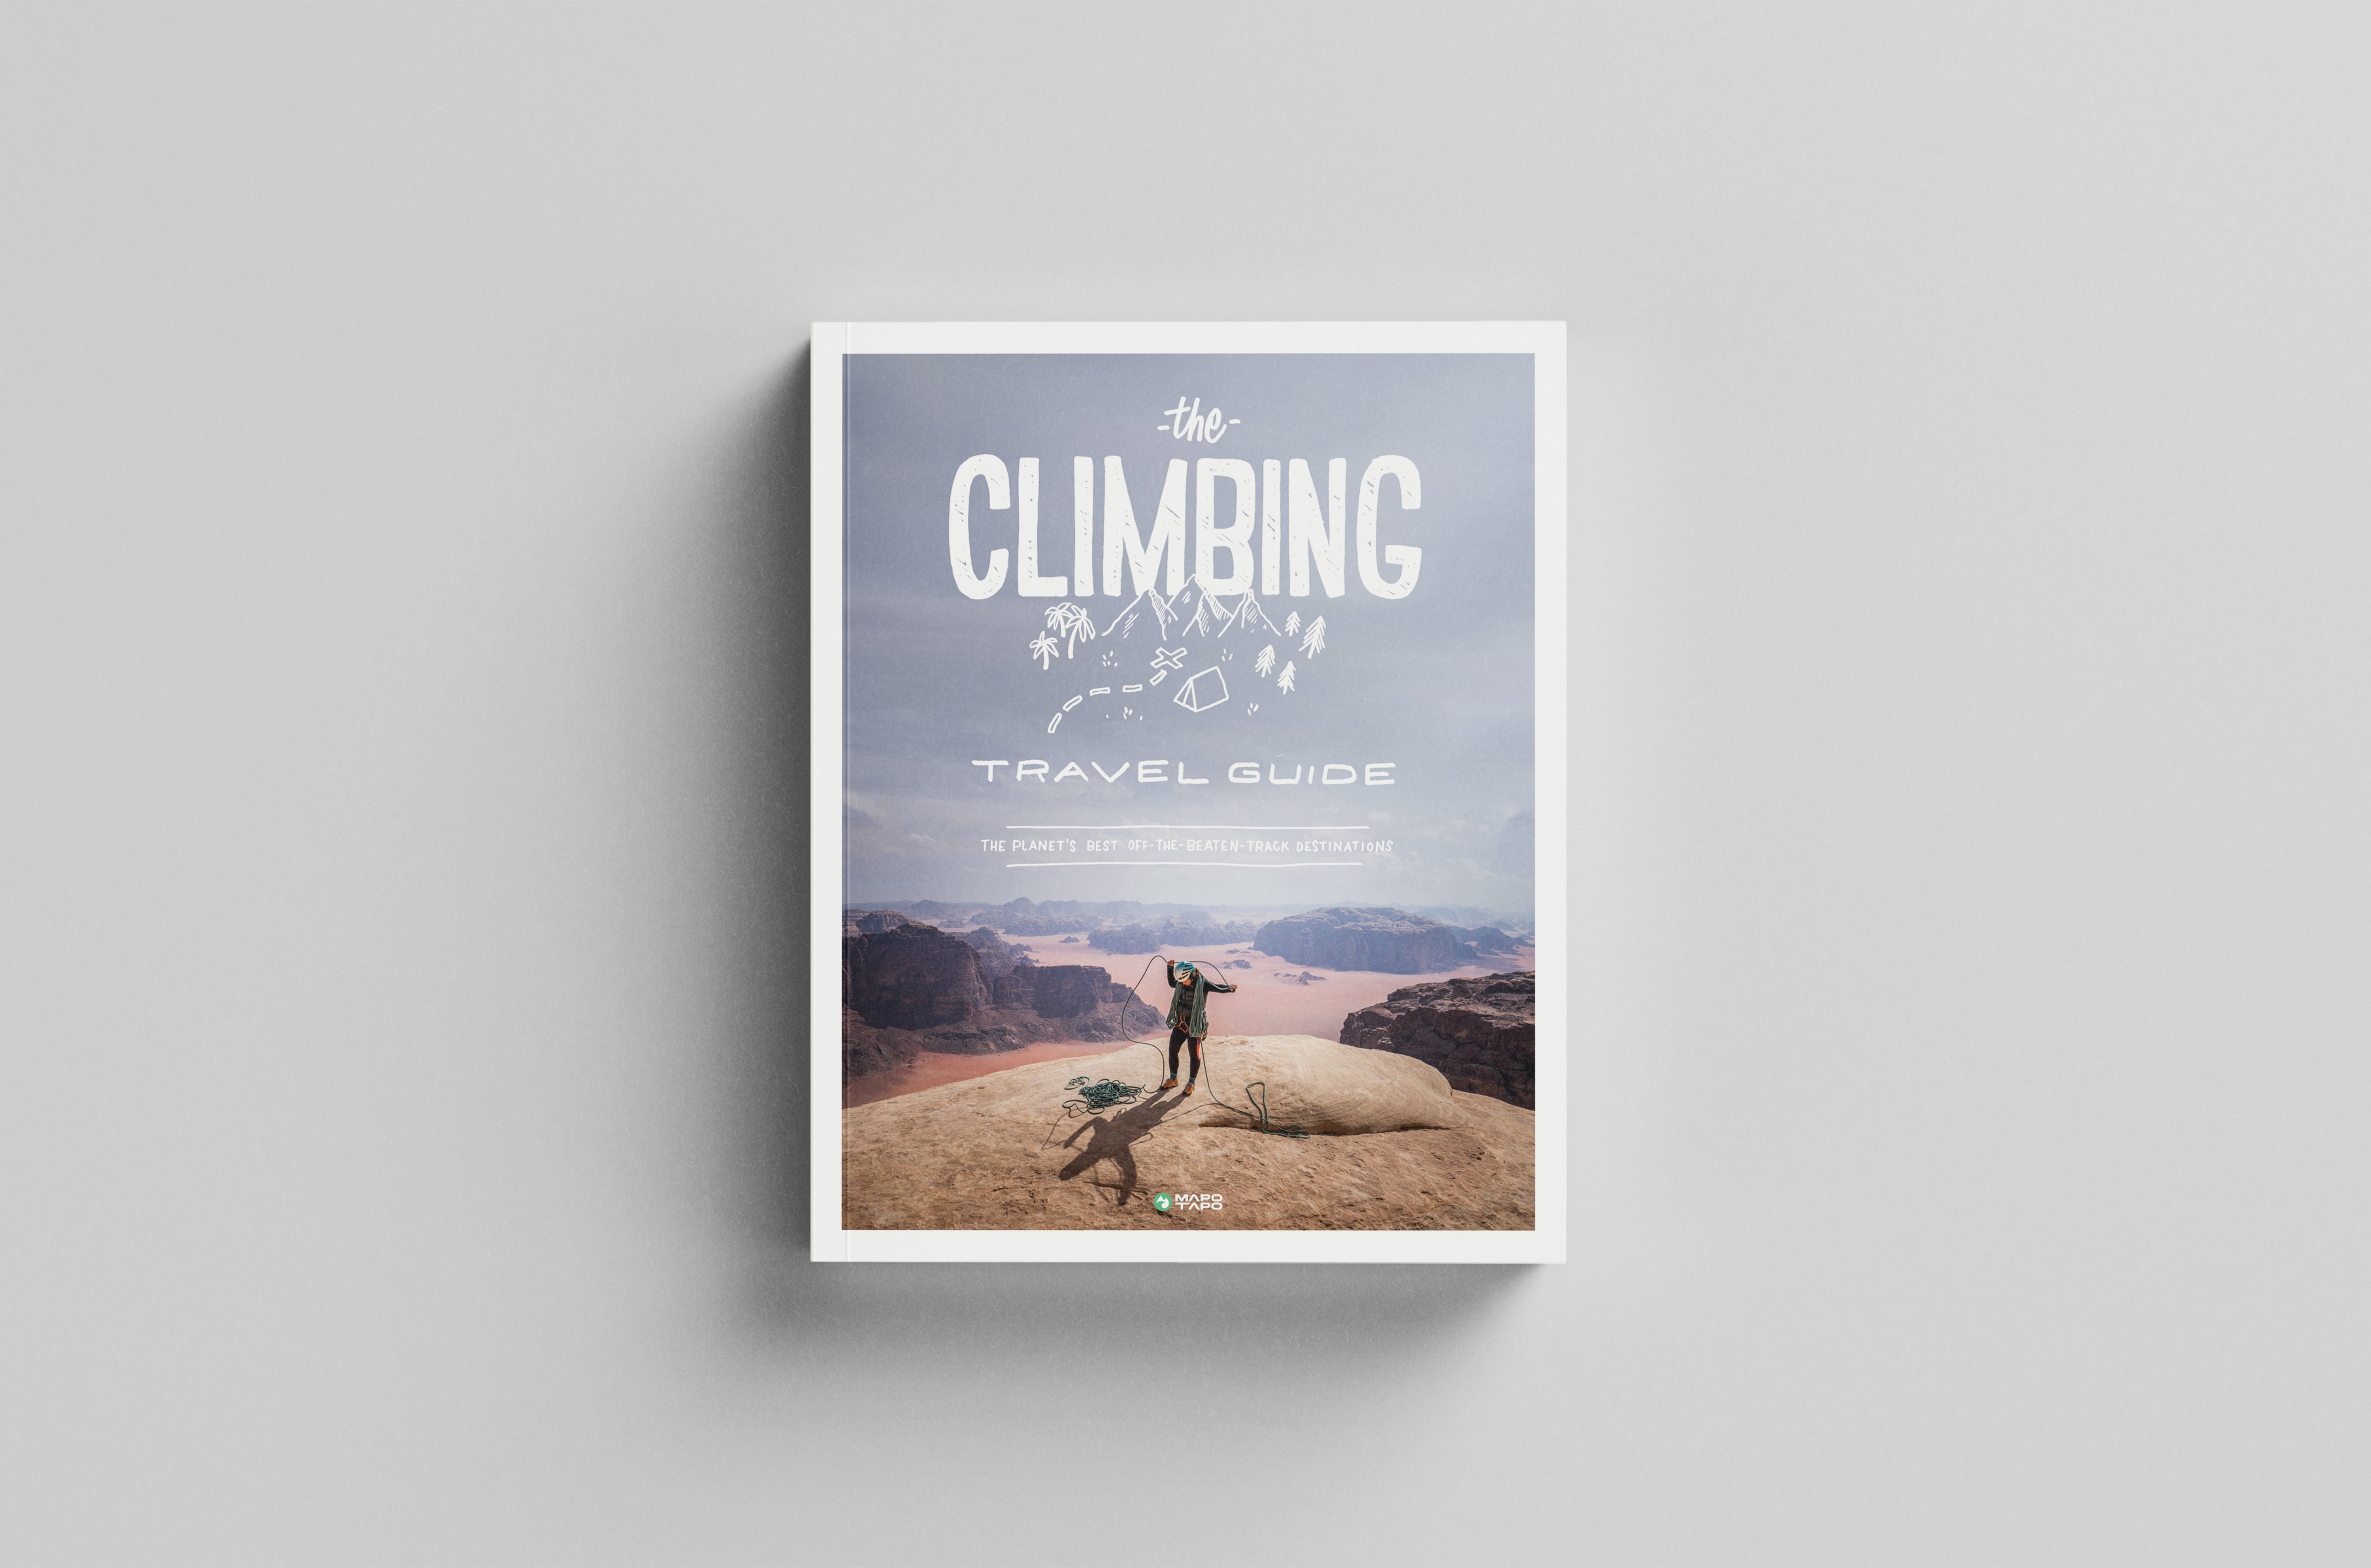 Un'immagine della copertina della Climbing Travel Guide